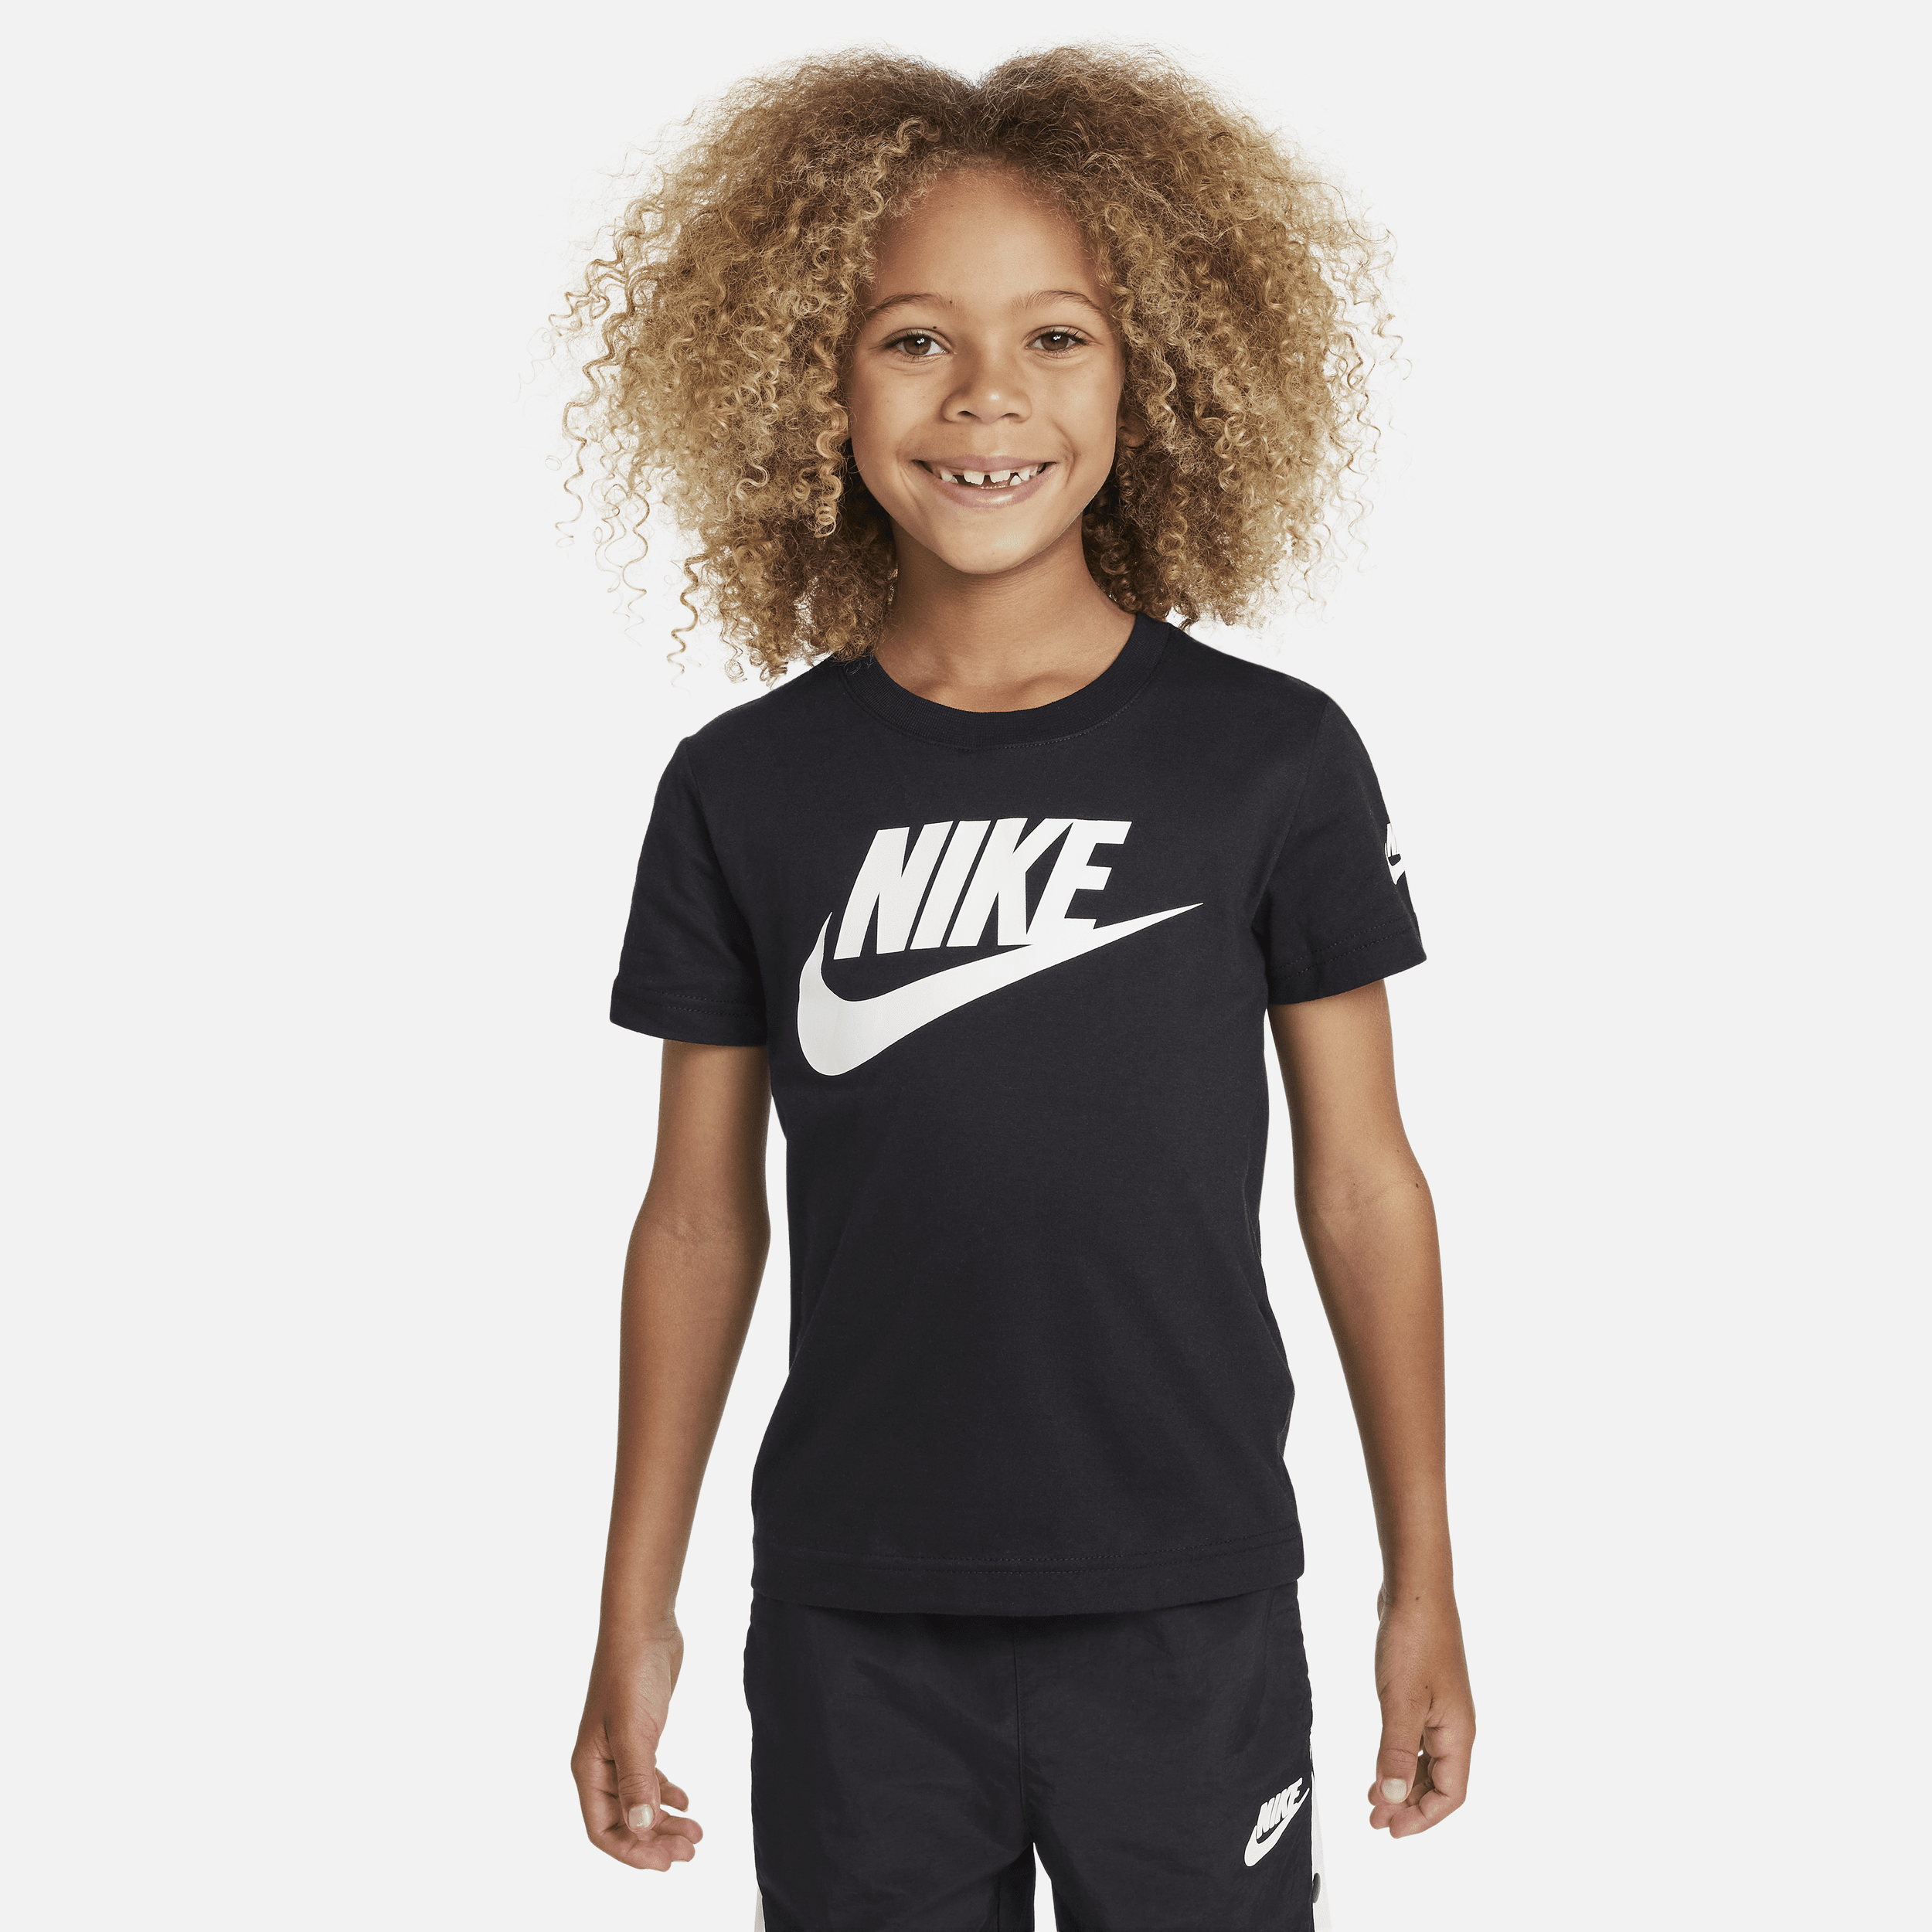 Nike Little Kids' T-shirt In Black